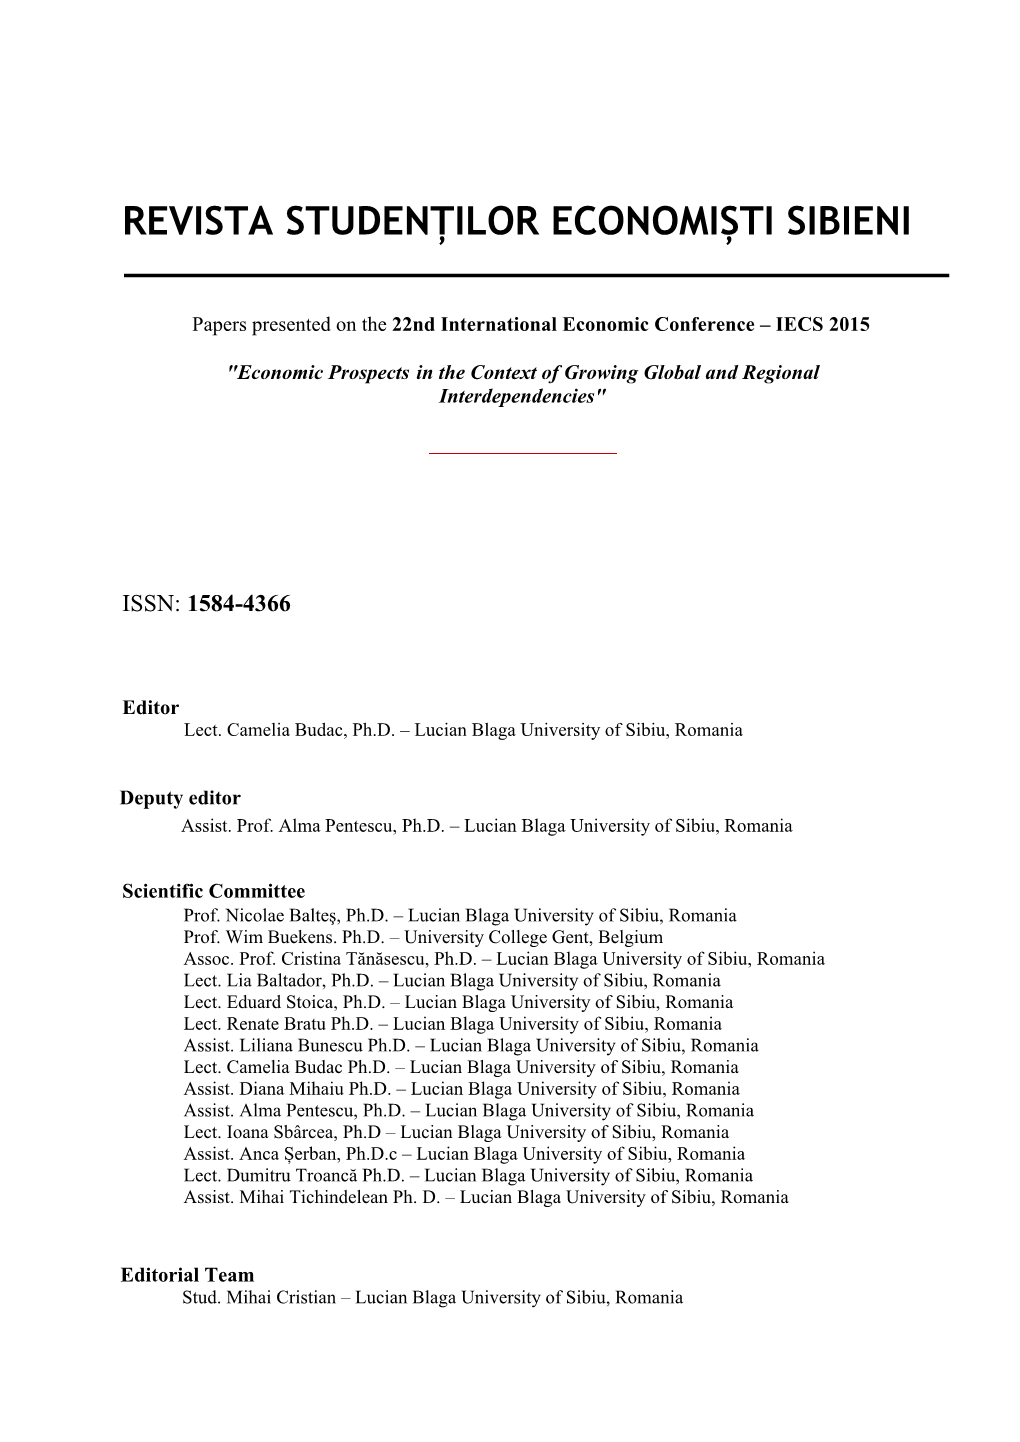 Revista Studenților Economiști Sibieni